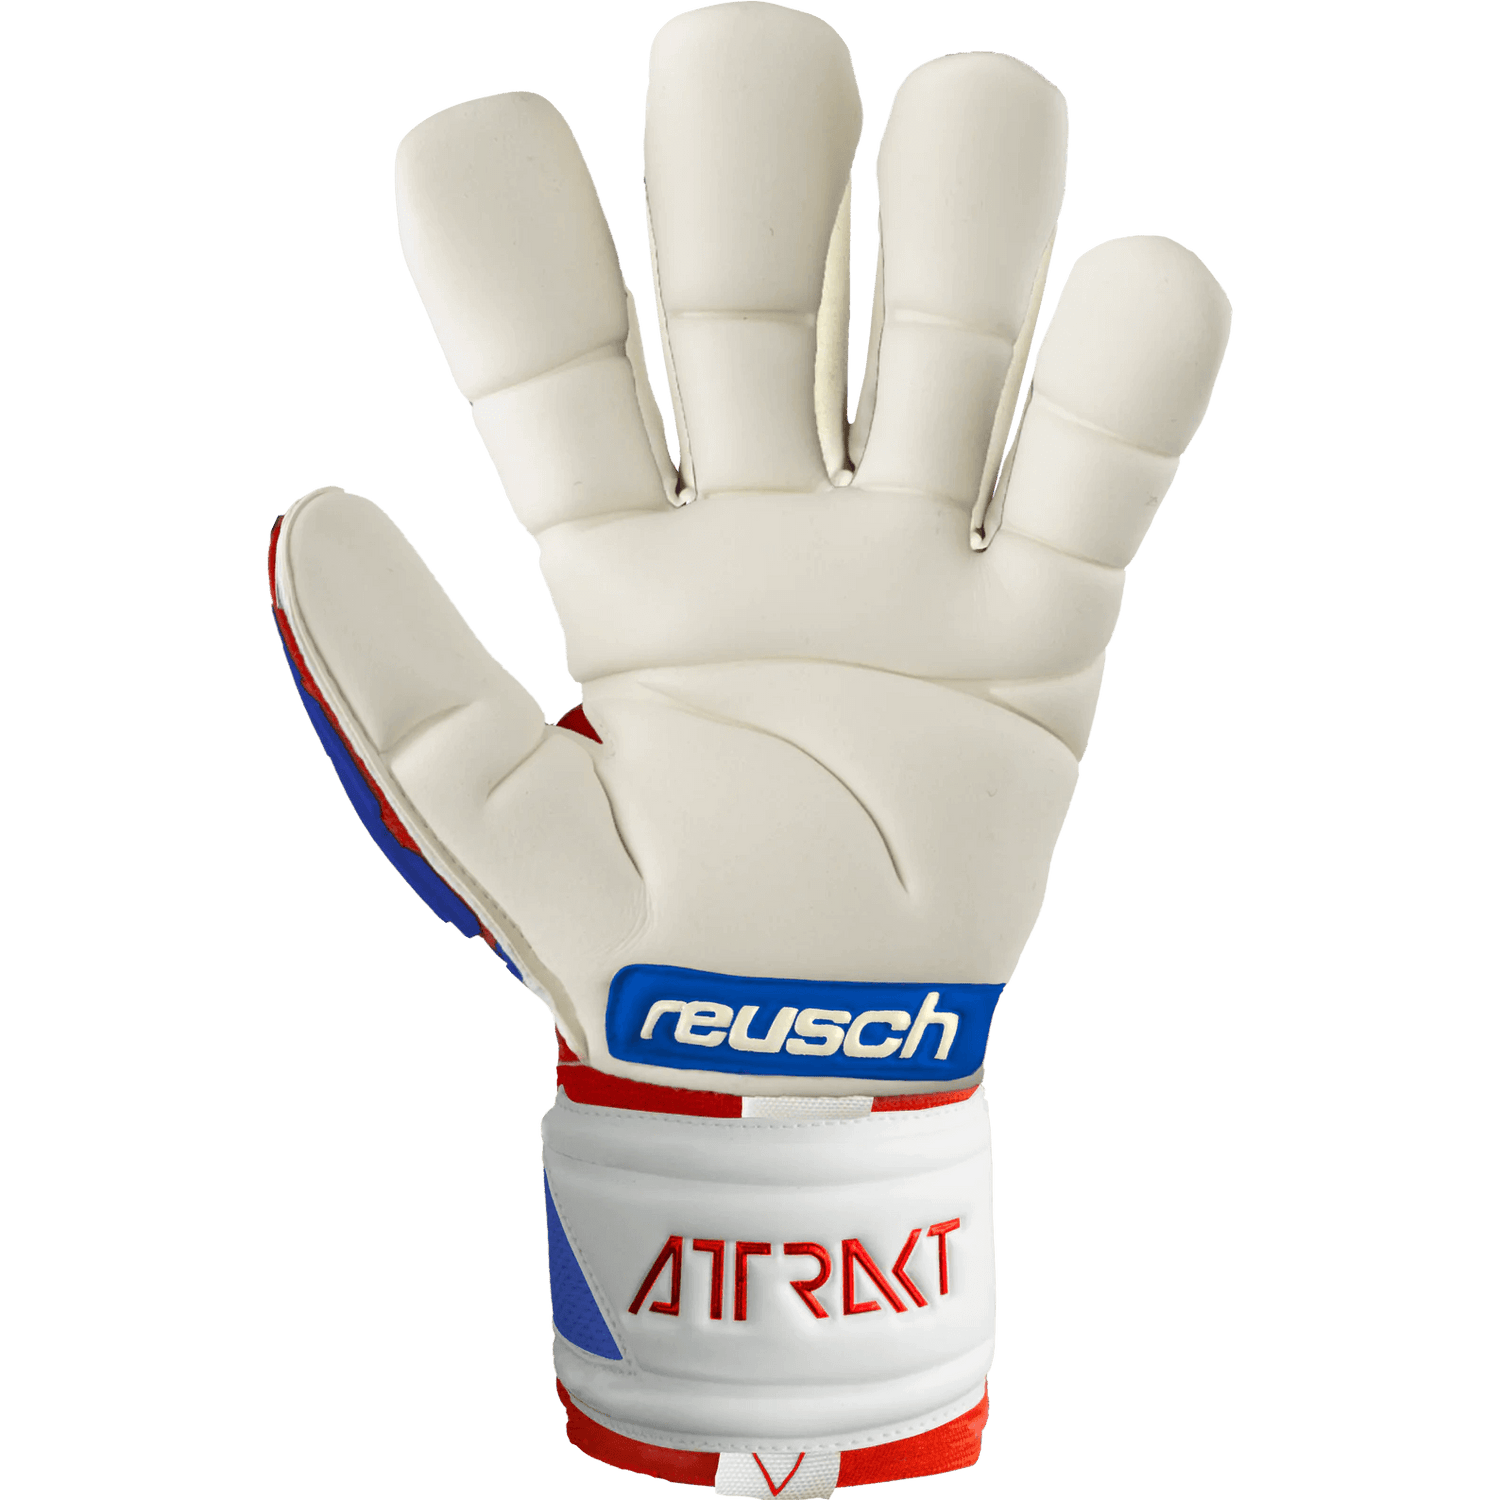 Reusch Attrakt Freegel Gold Finger Support Goalkeeper Gloves (Single - Inner)